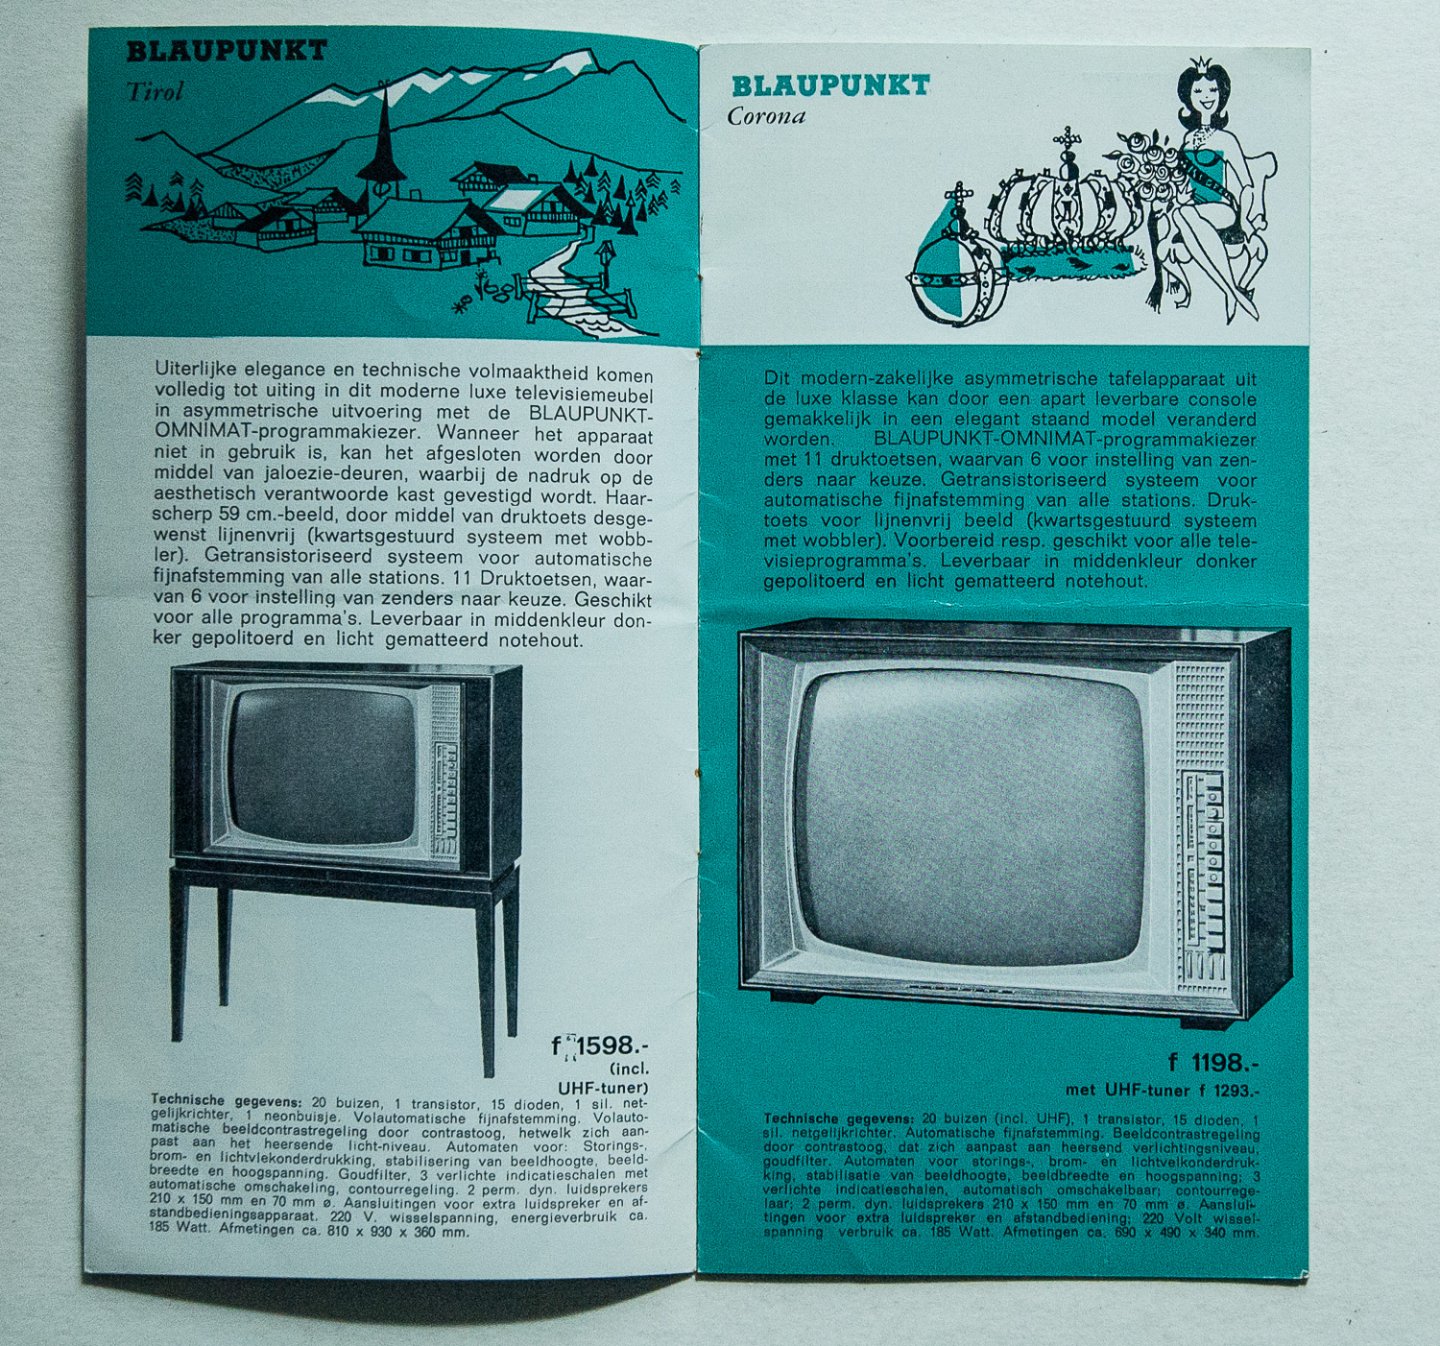  - Blaupunkt Televisie - apparaten Serie 1962-63